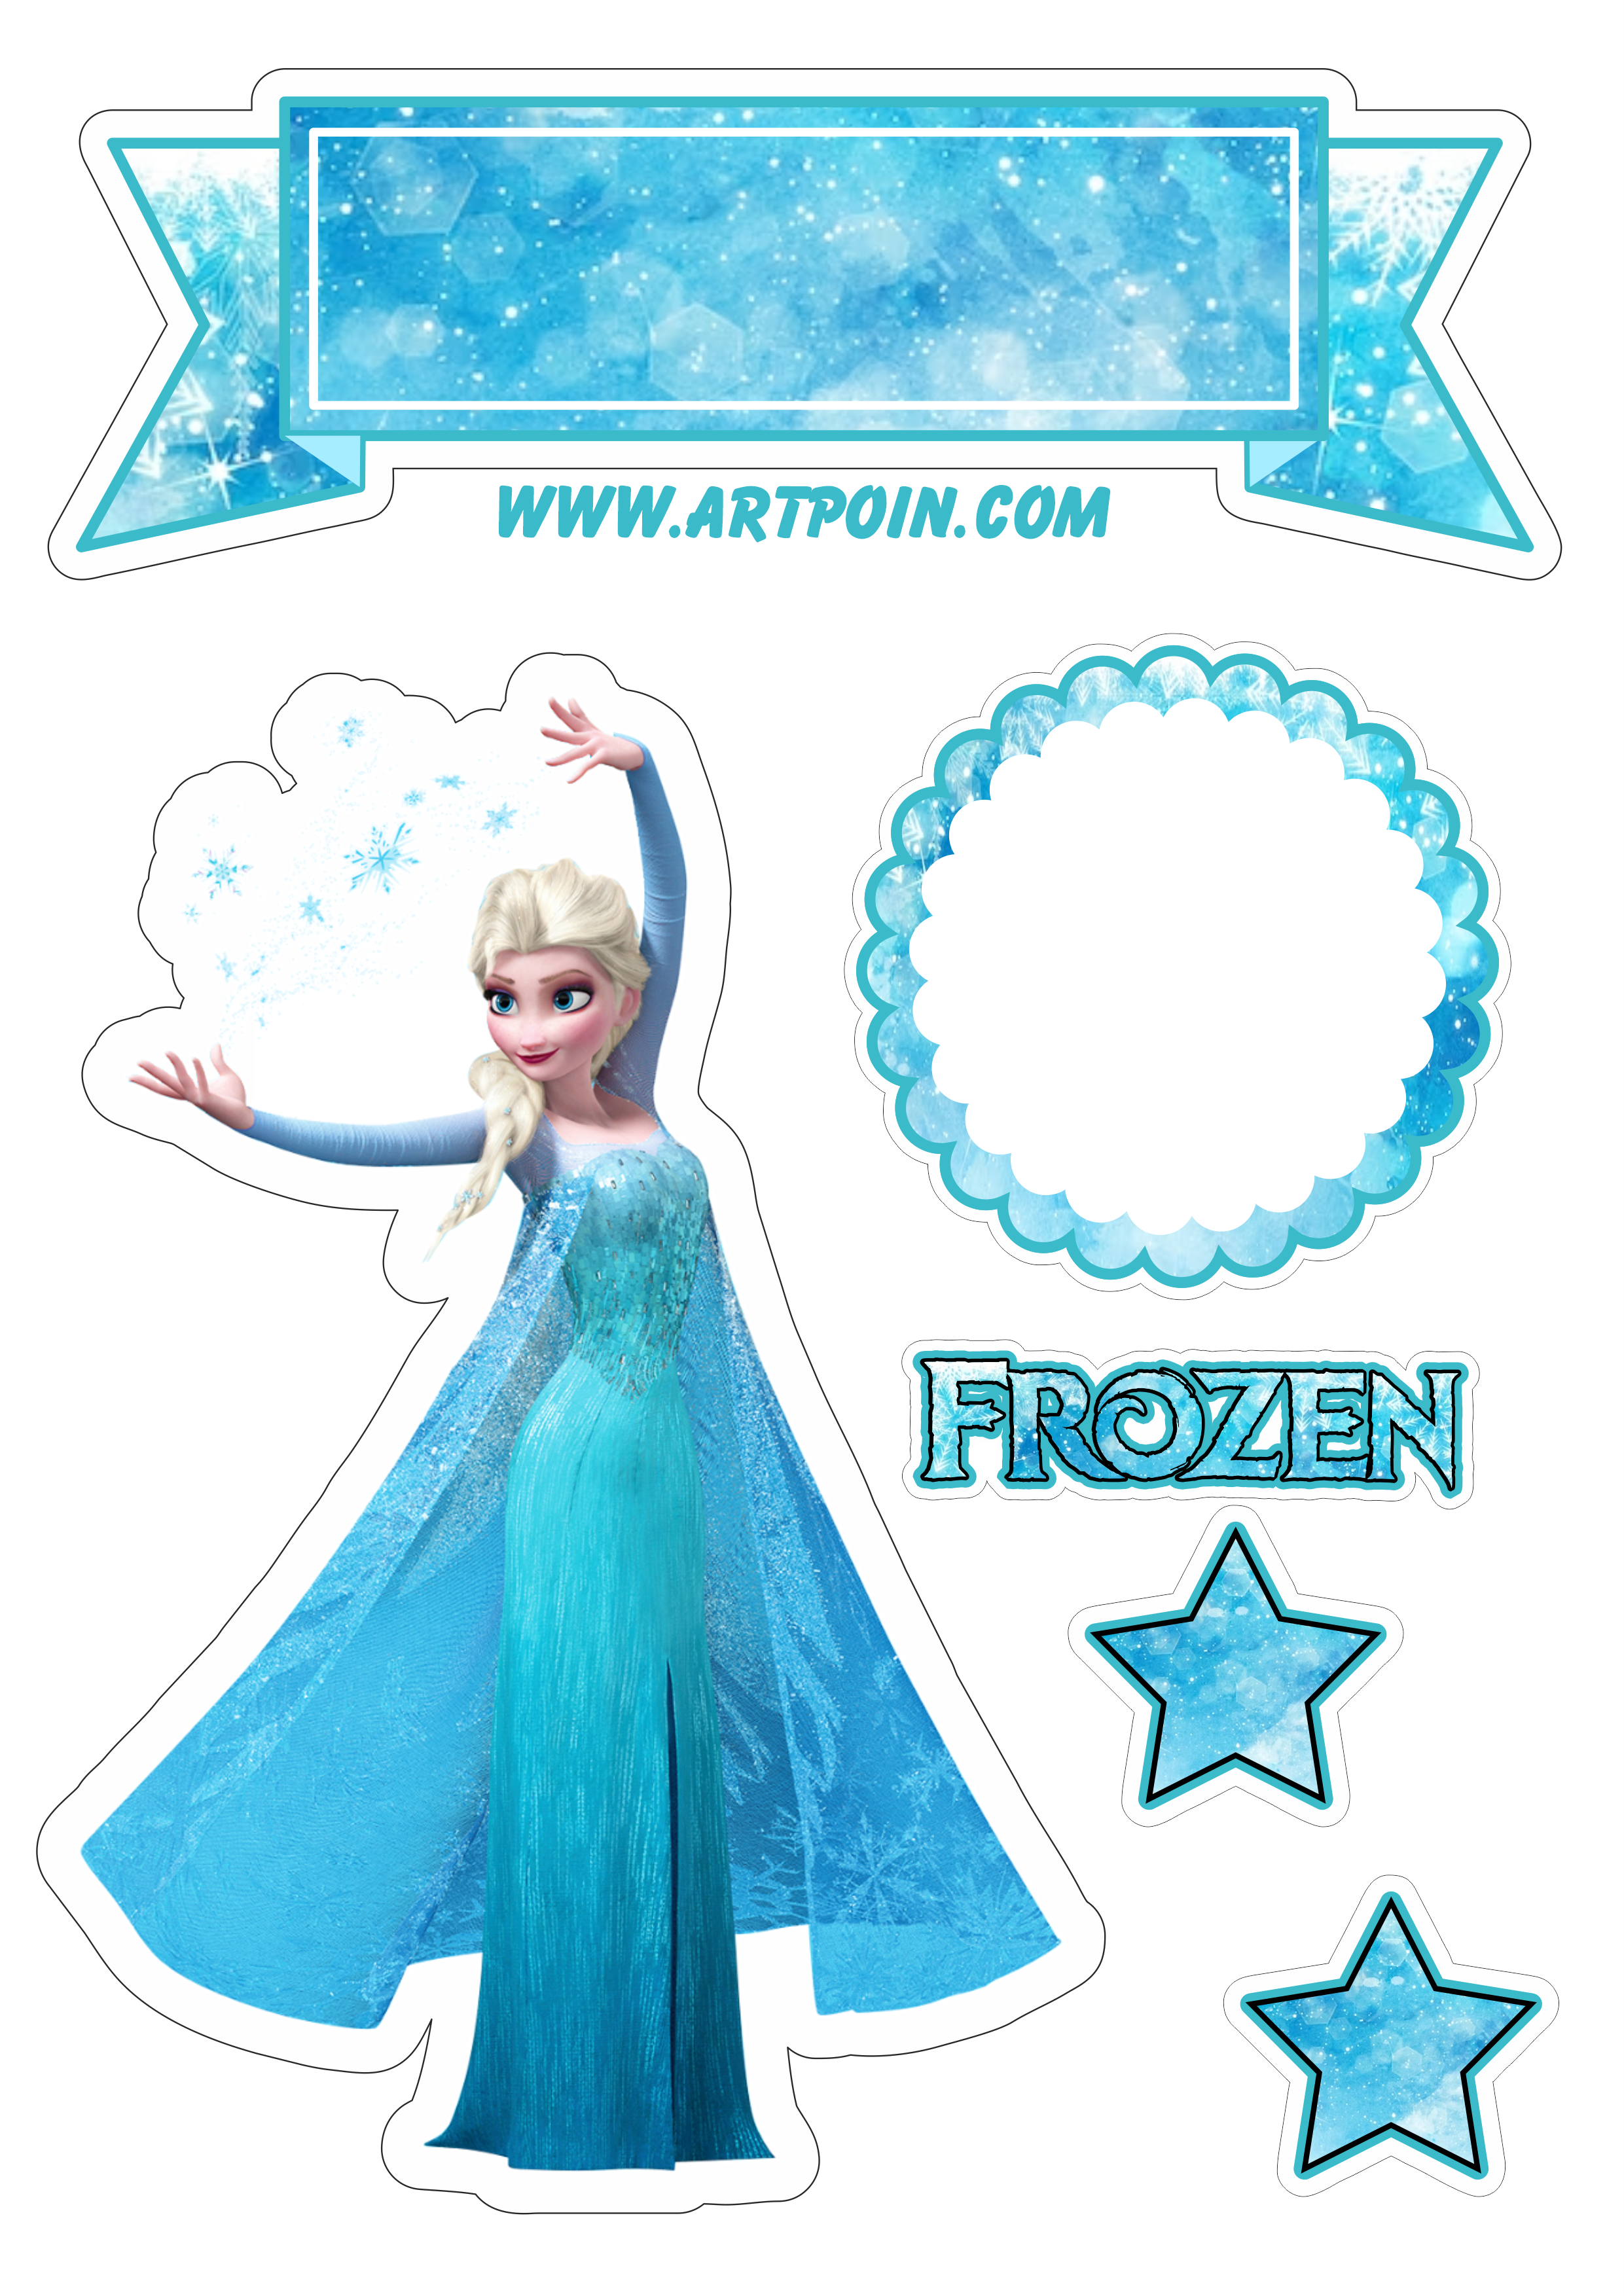 Topo de bolo para imprimir Frozen uma aventura congelante festa de aniversário temática menina infantil Elsa rainha do gelo png